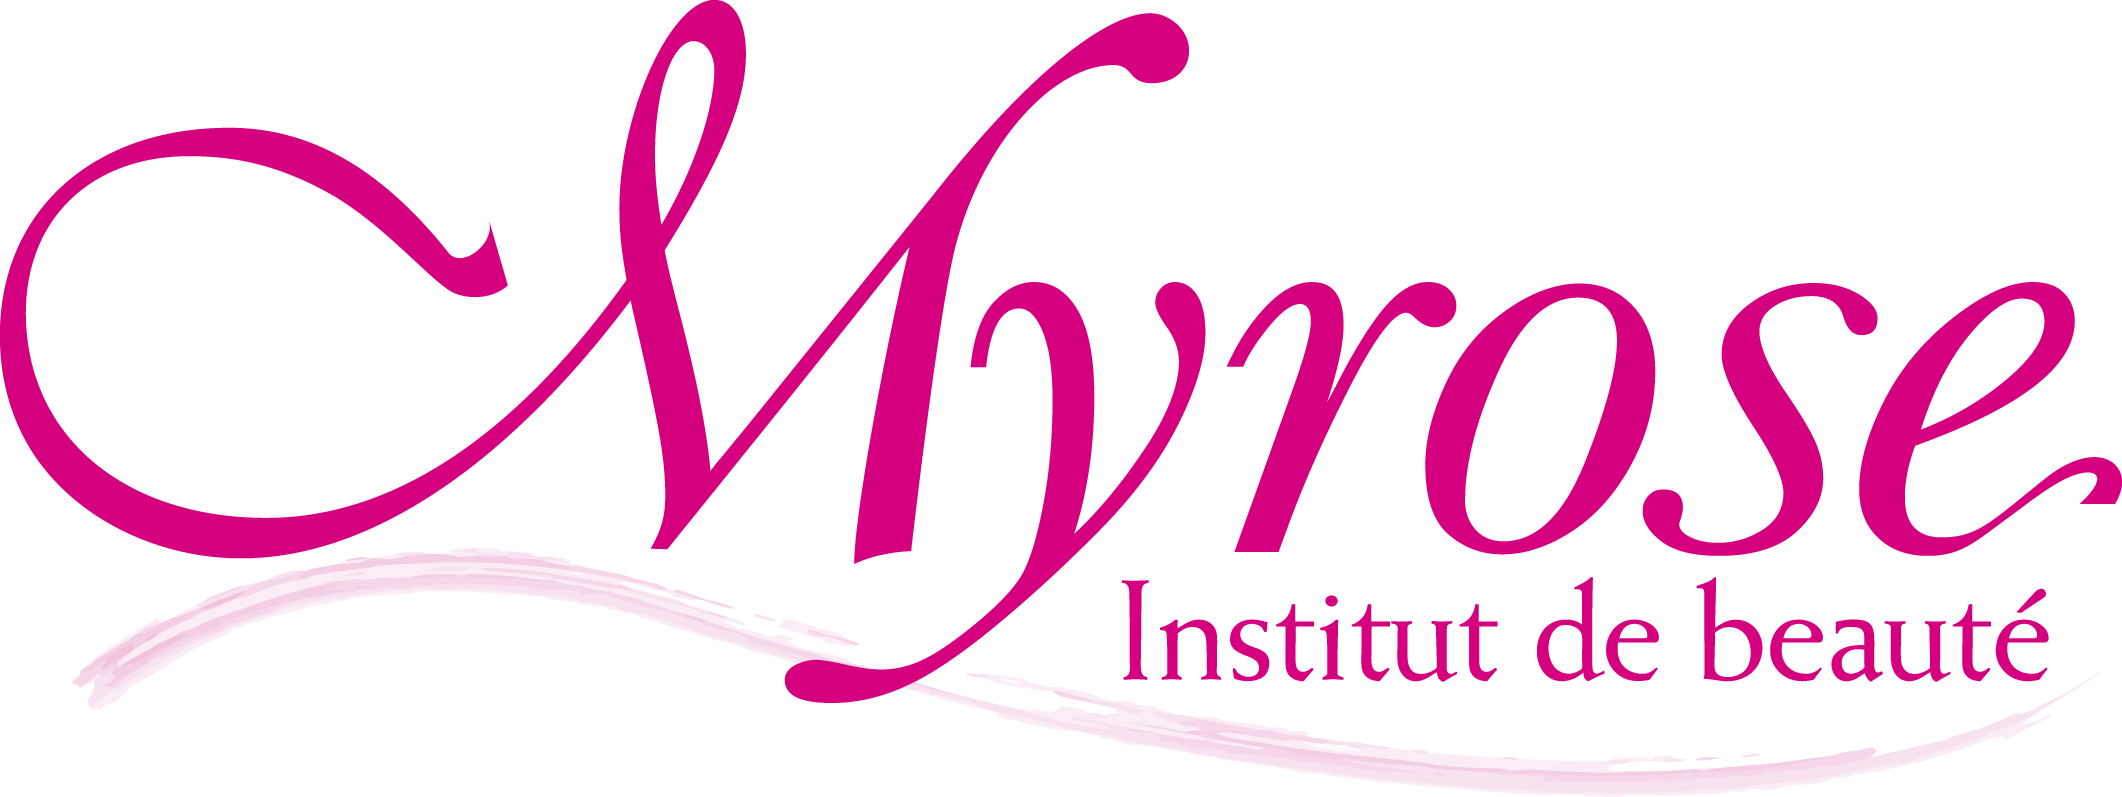 Institut de beauté Myrose